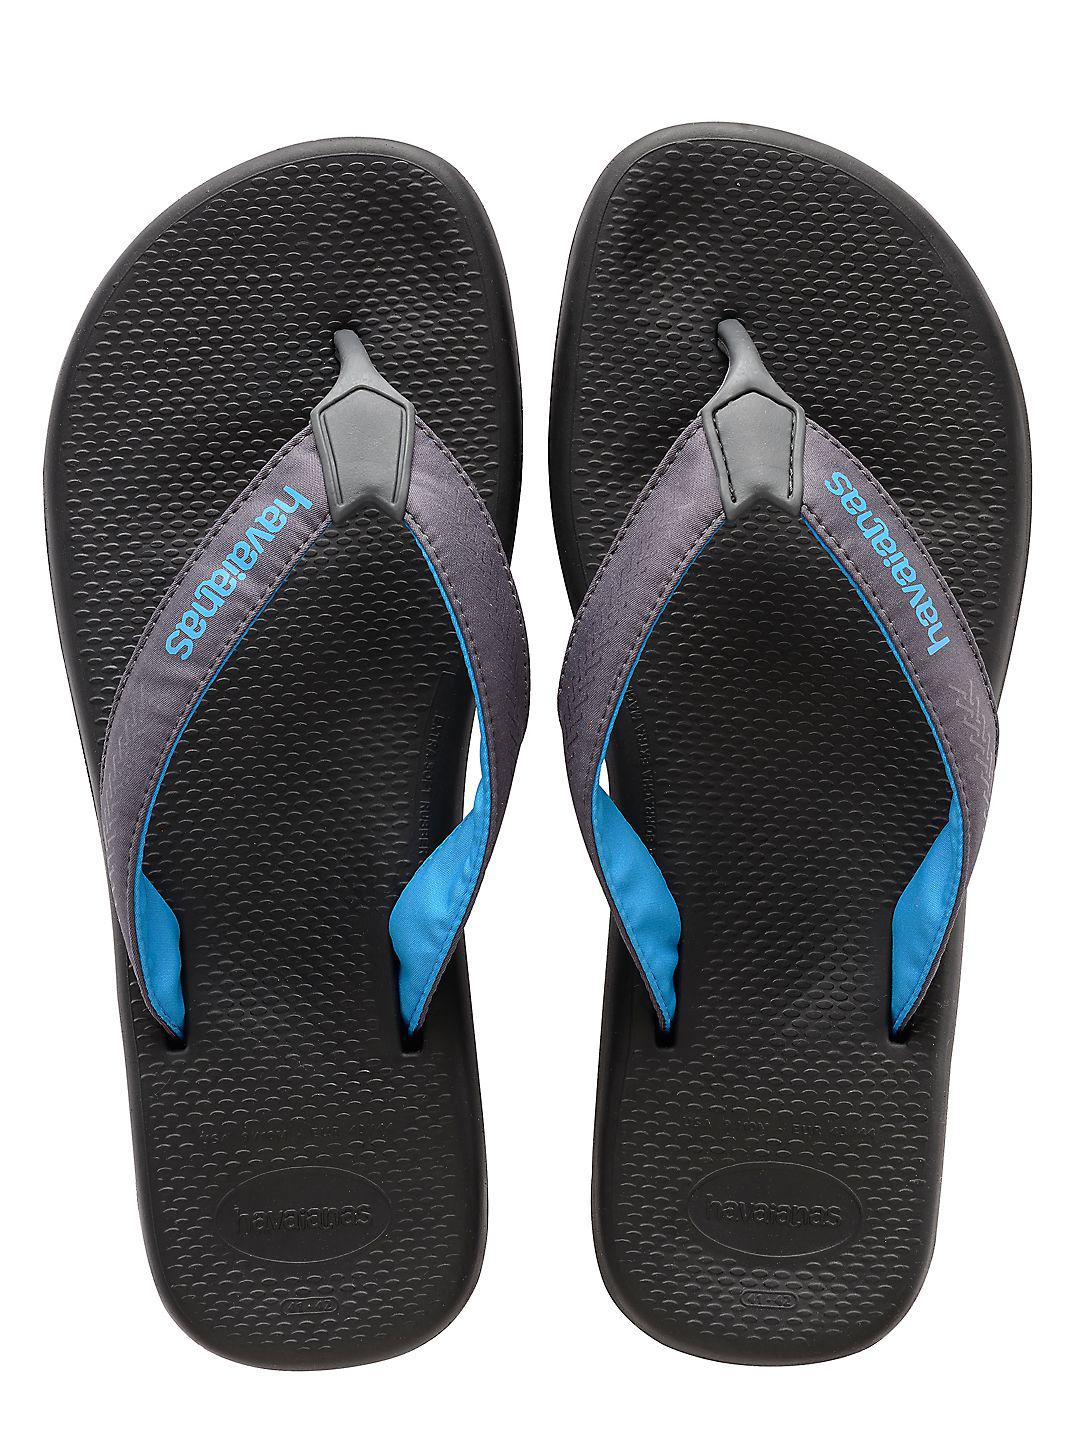 Flip Flops & Thongs Men's Shoes Havaianas Mens Surf Pro Flip Flops ...